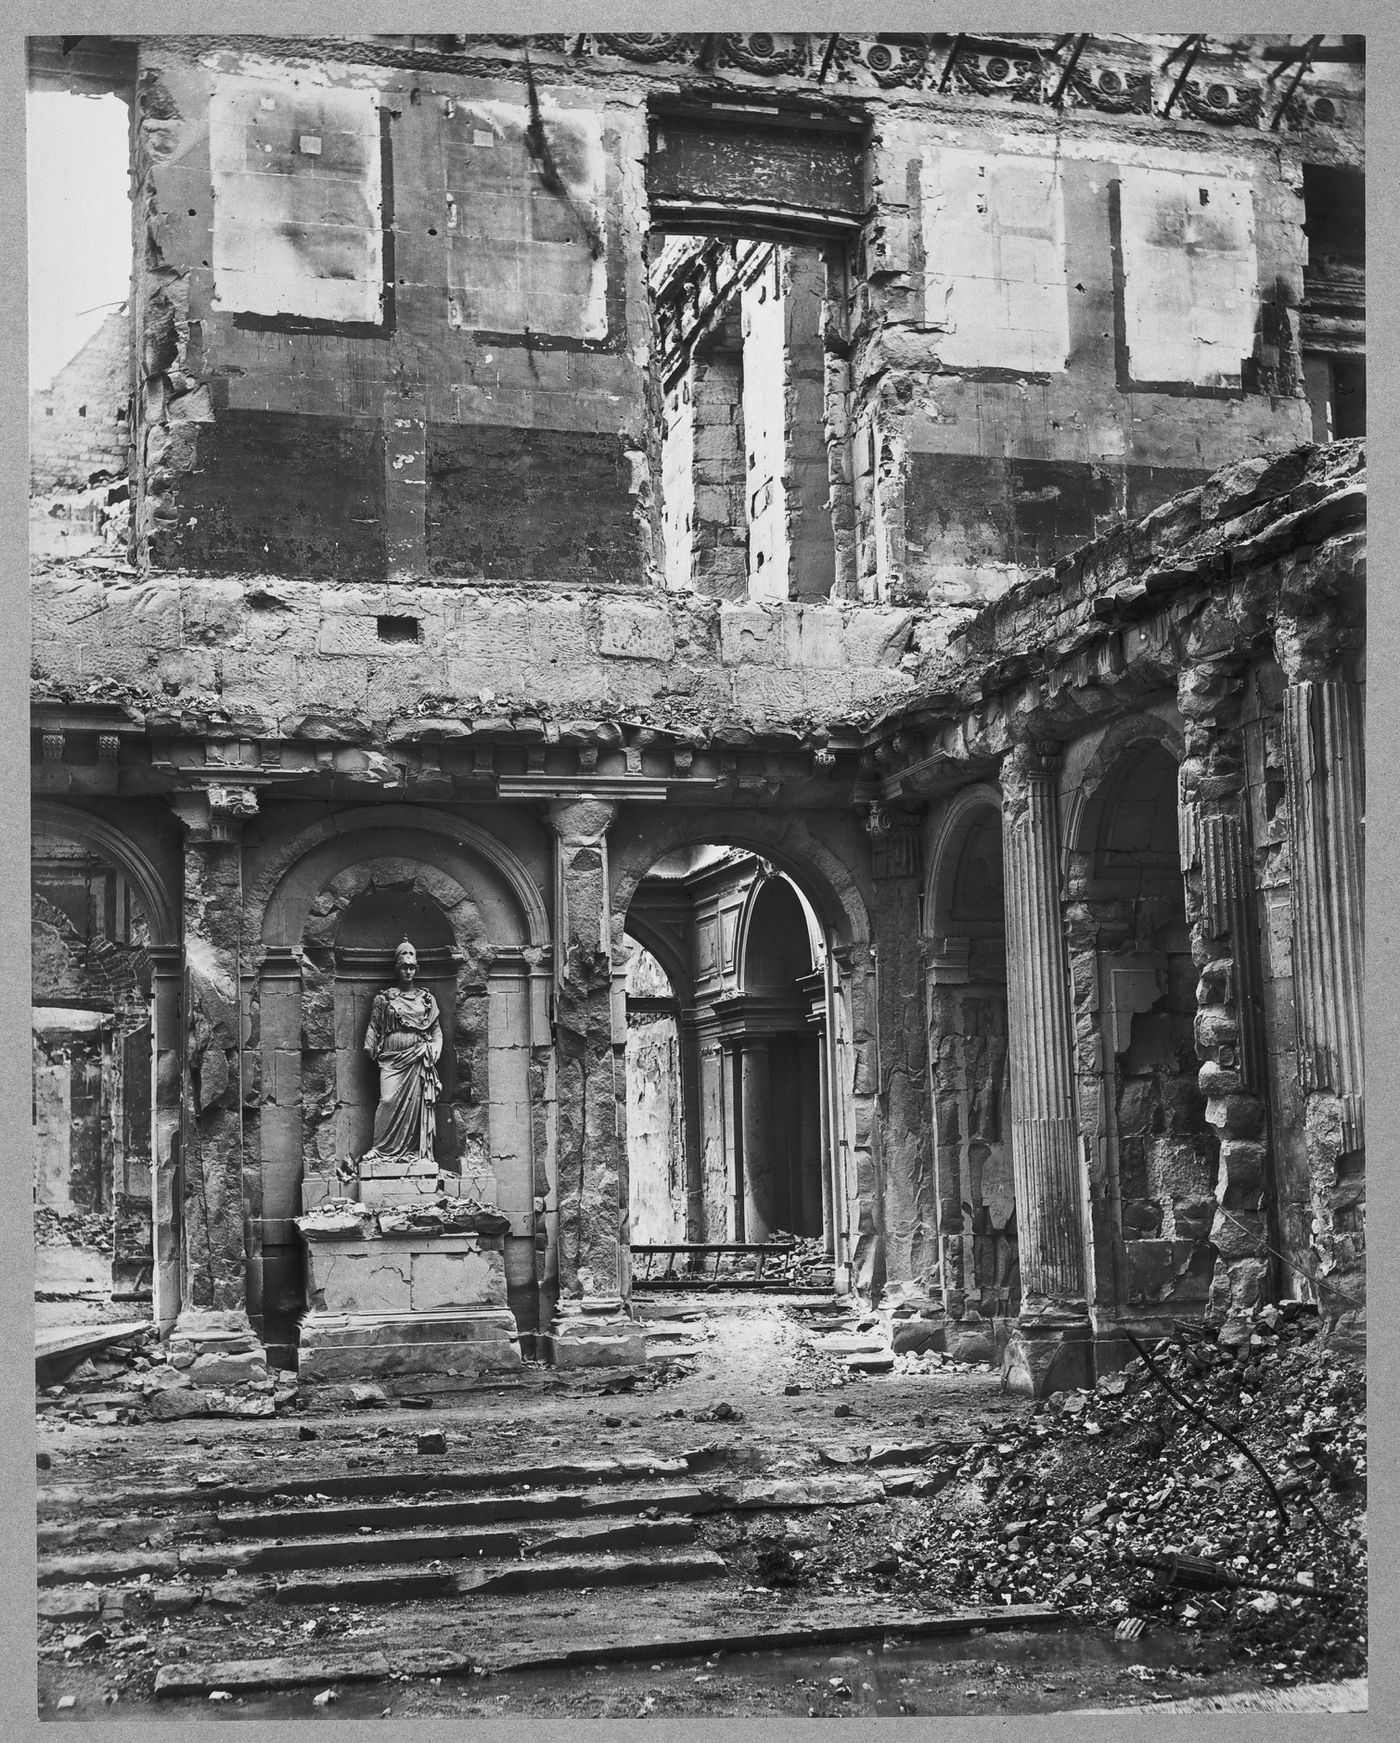 View of the damage to the Tuileries Pavillon de L'Horloge gantry after the Paris Commune, Paris, France